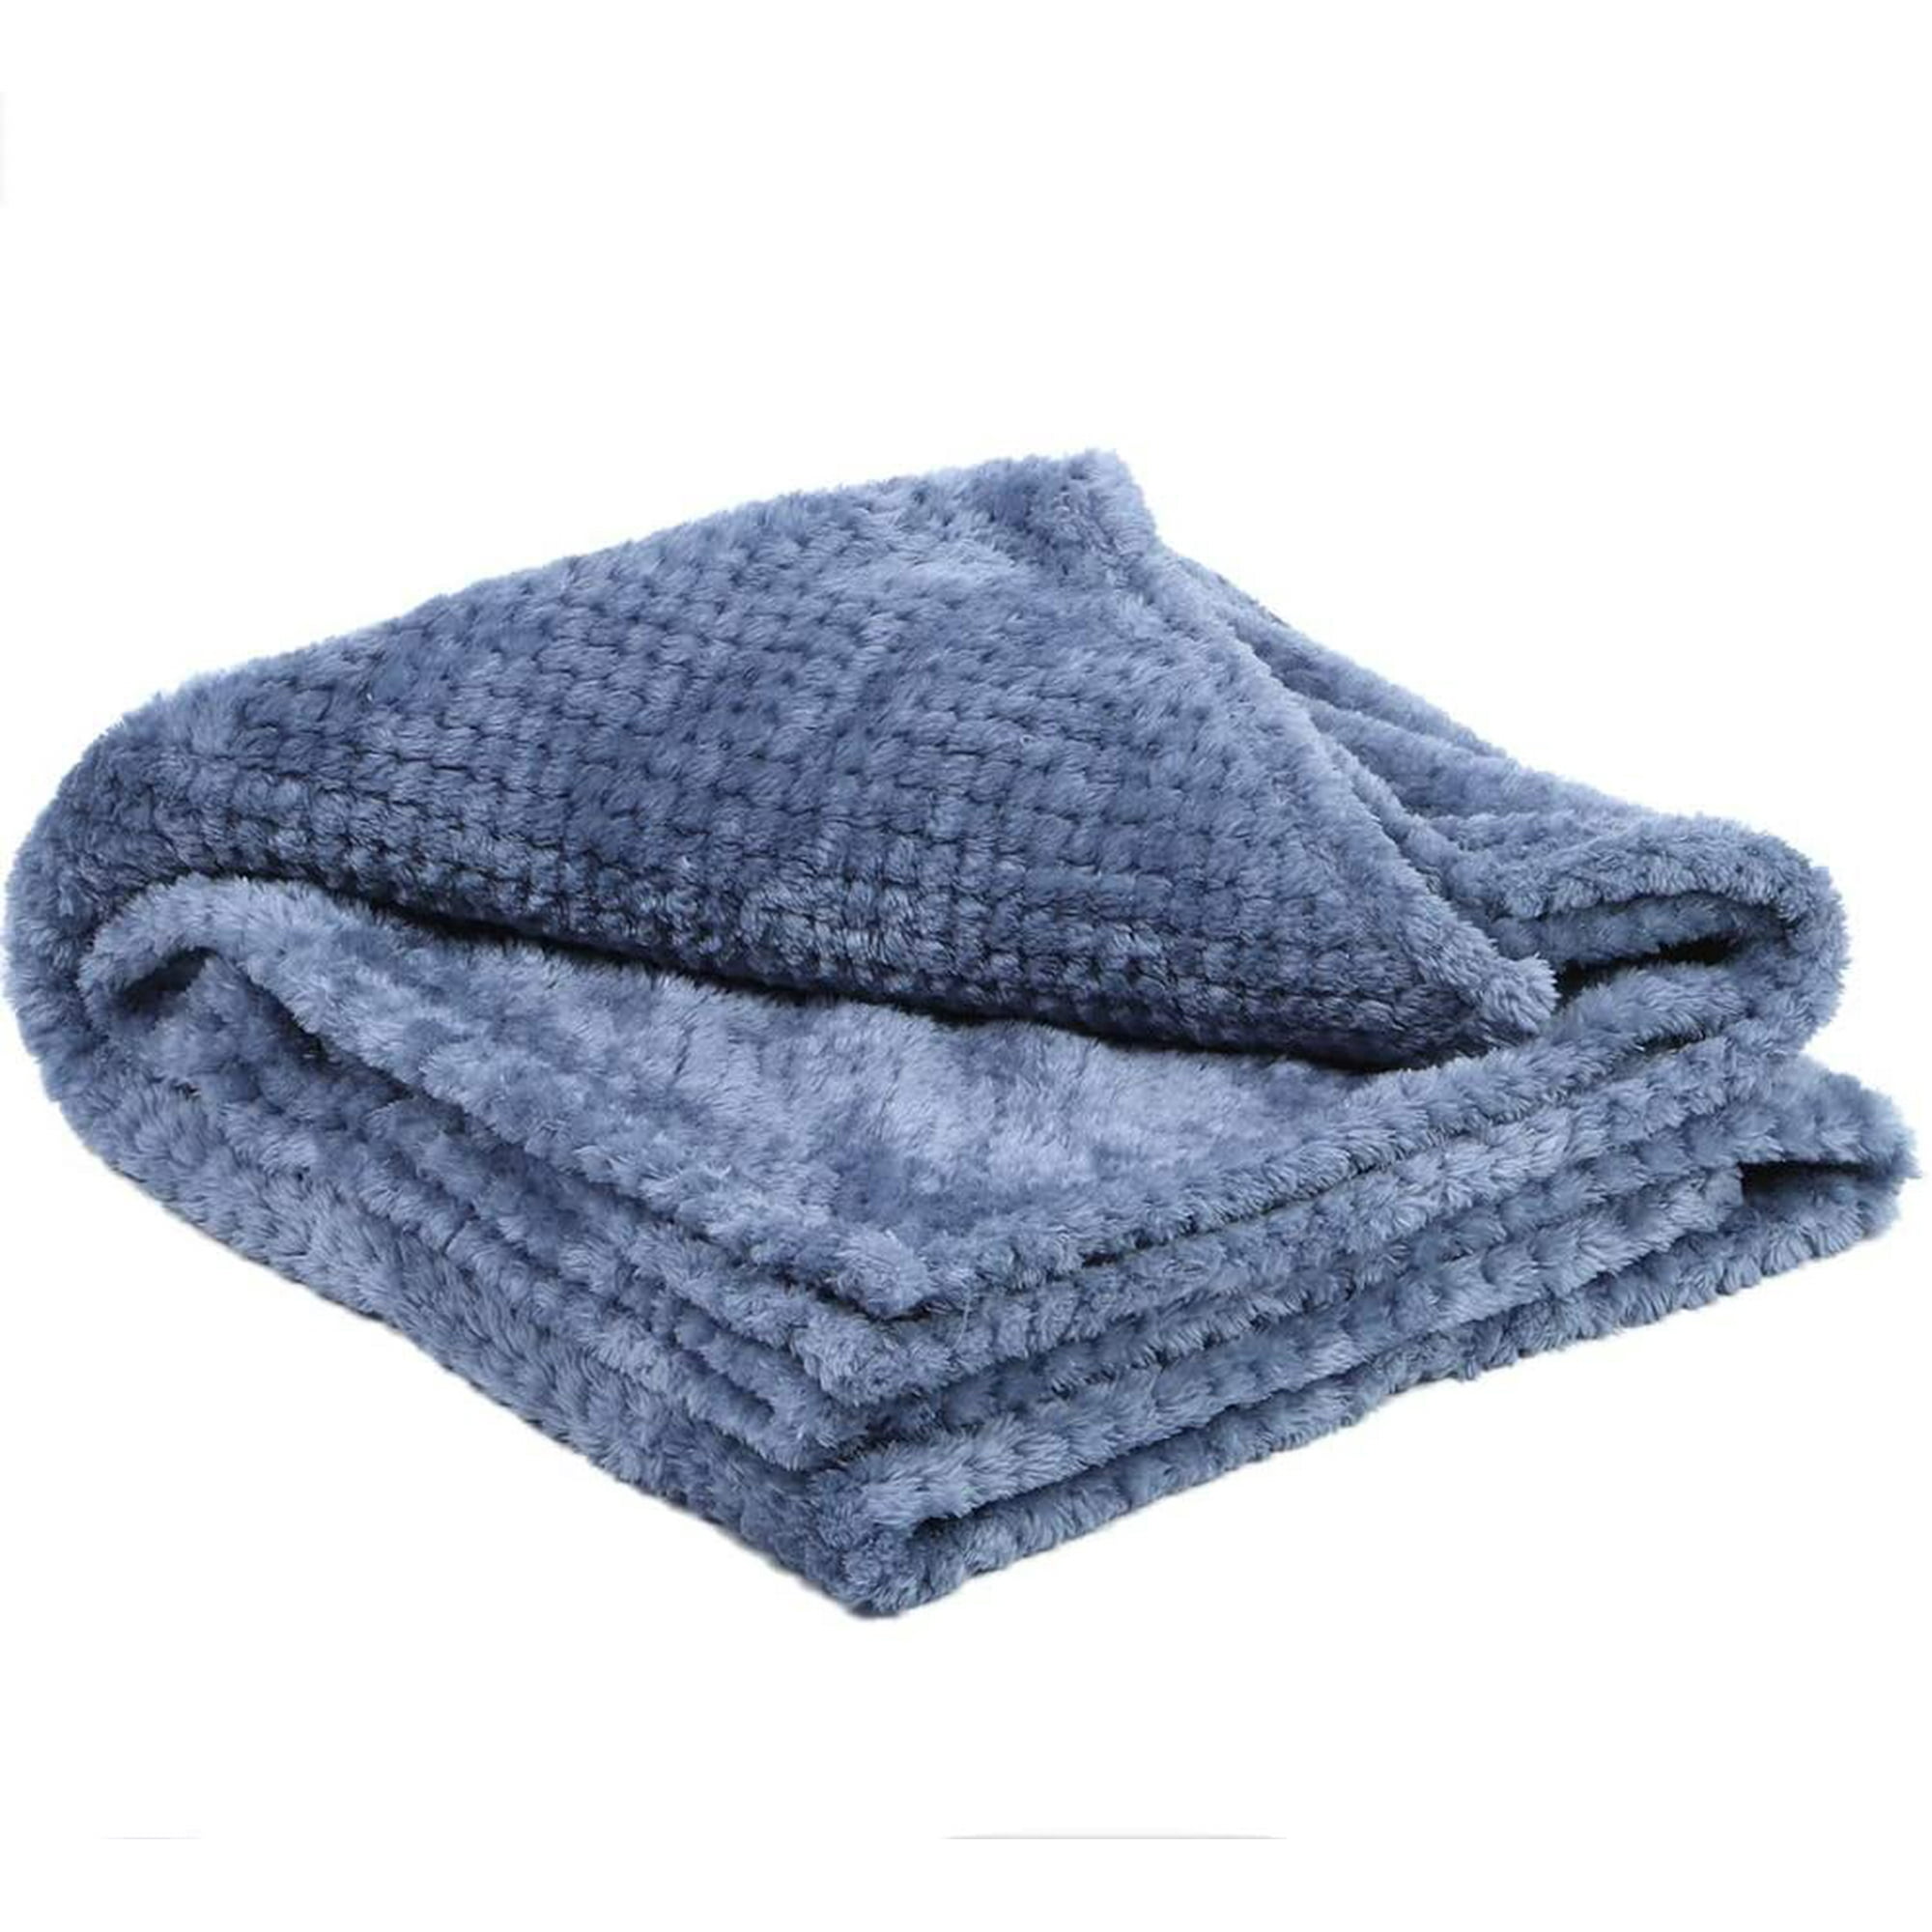 Smoky blue, 70100cm Polyester Blanket Sofa for Spring Bed Summer Wrinkle Resistance Blanket 